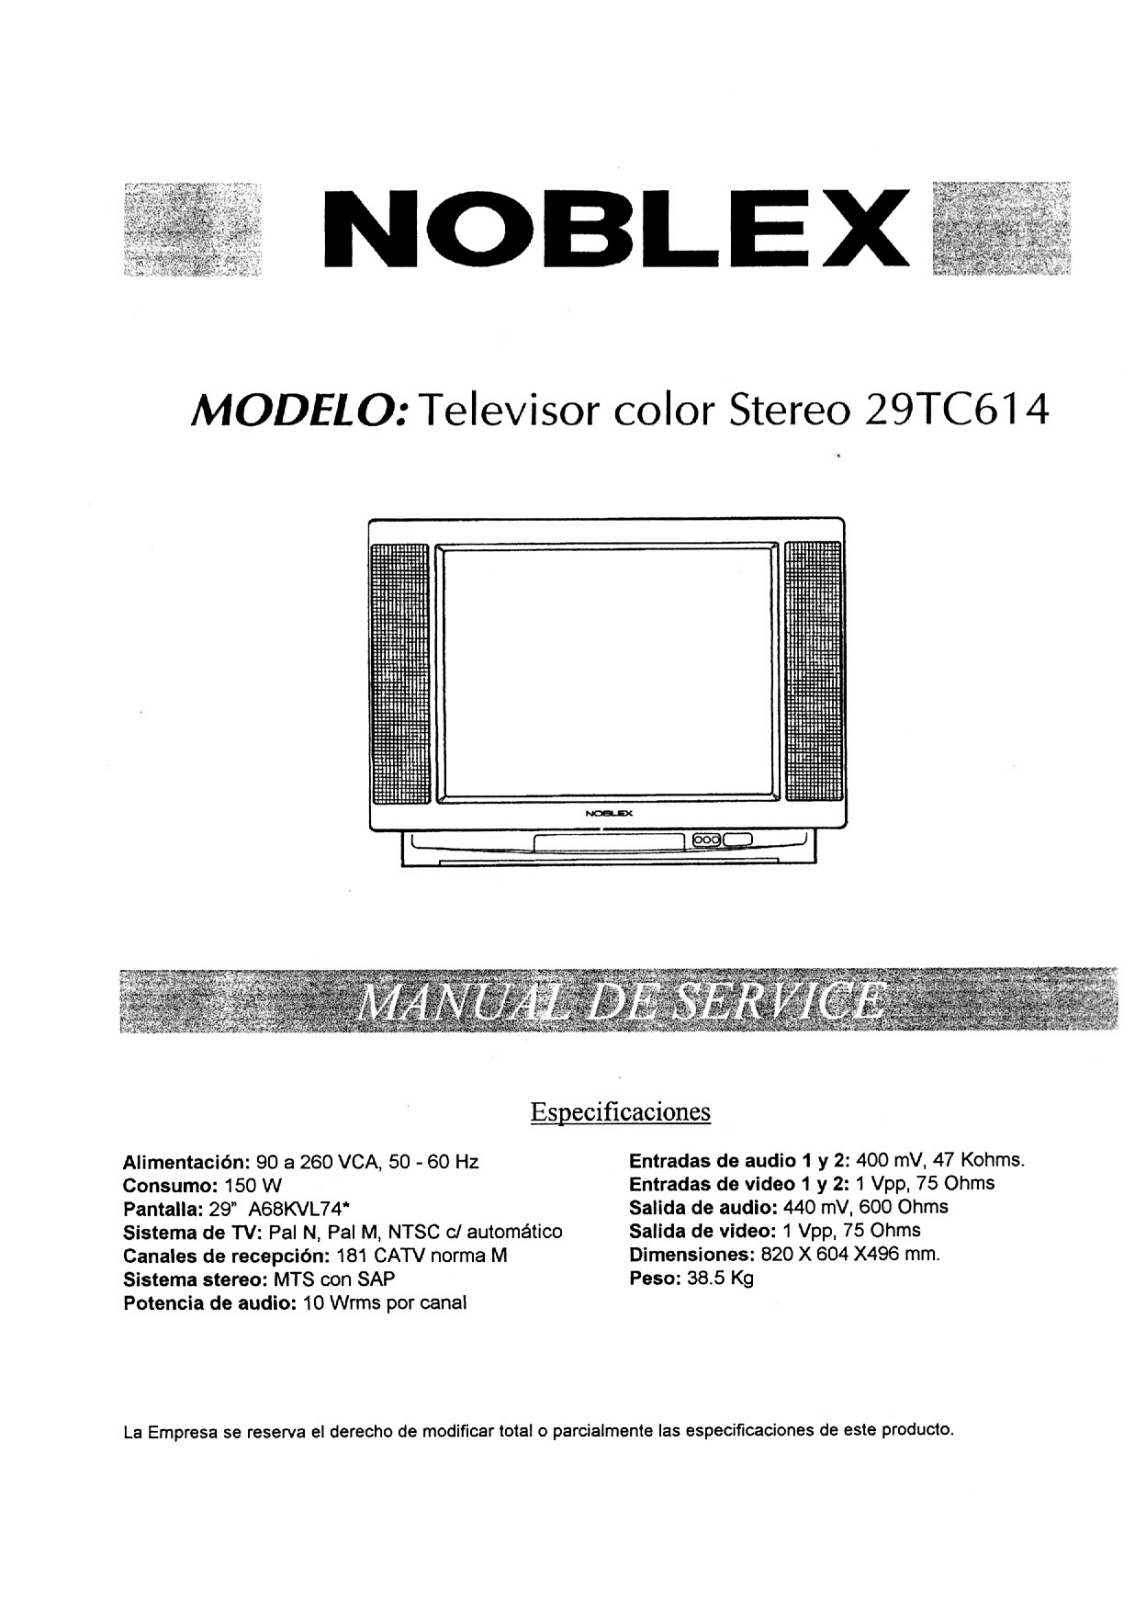 NOBLEX 29TC614 Diagram